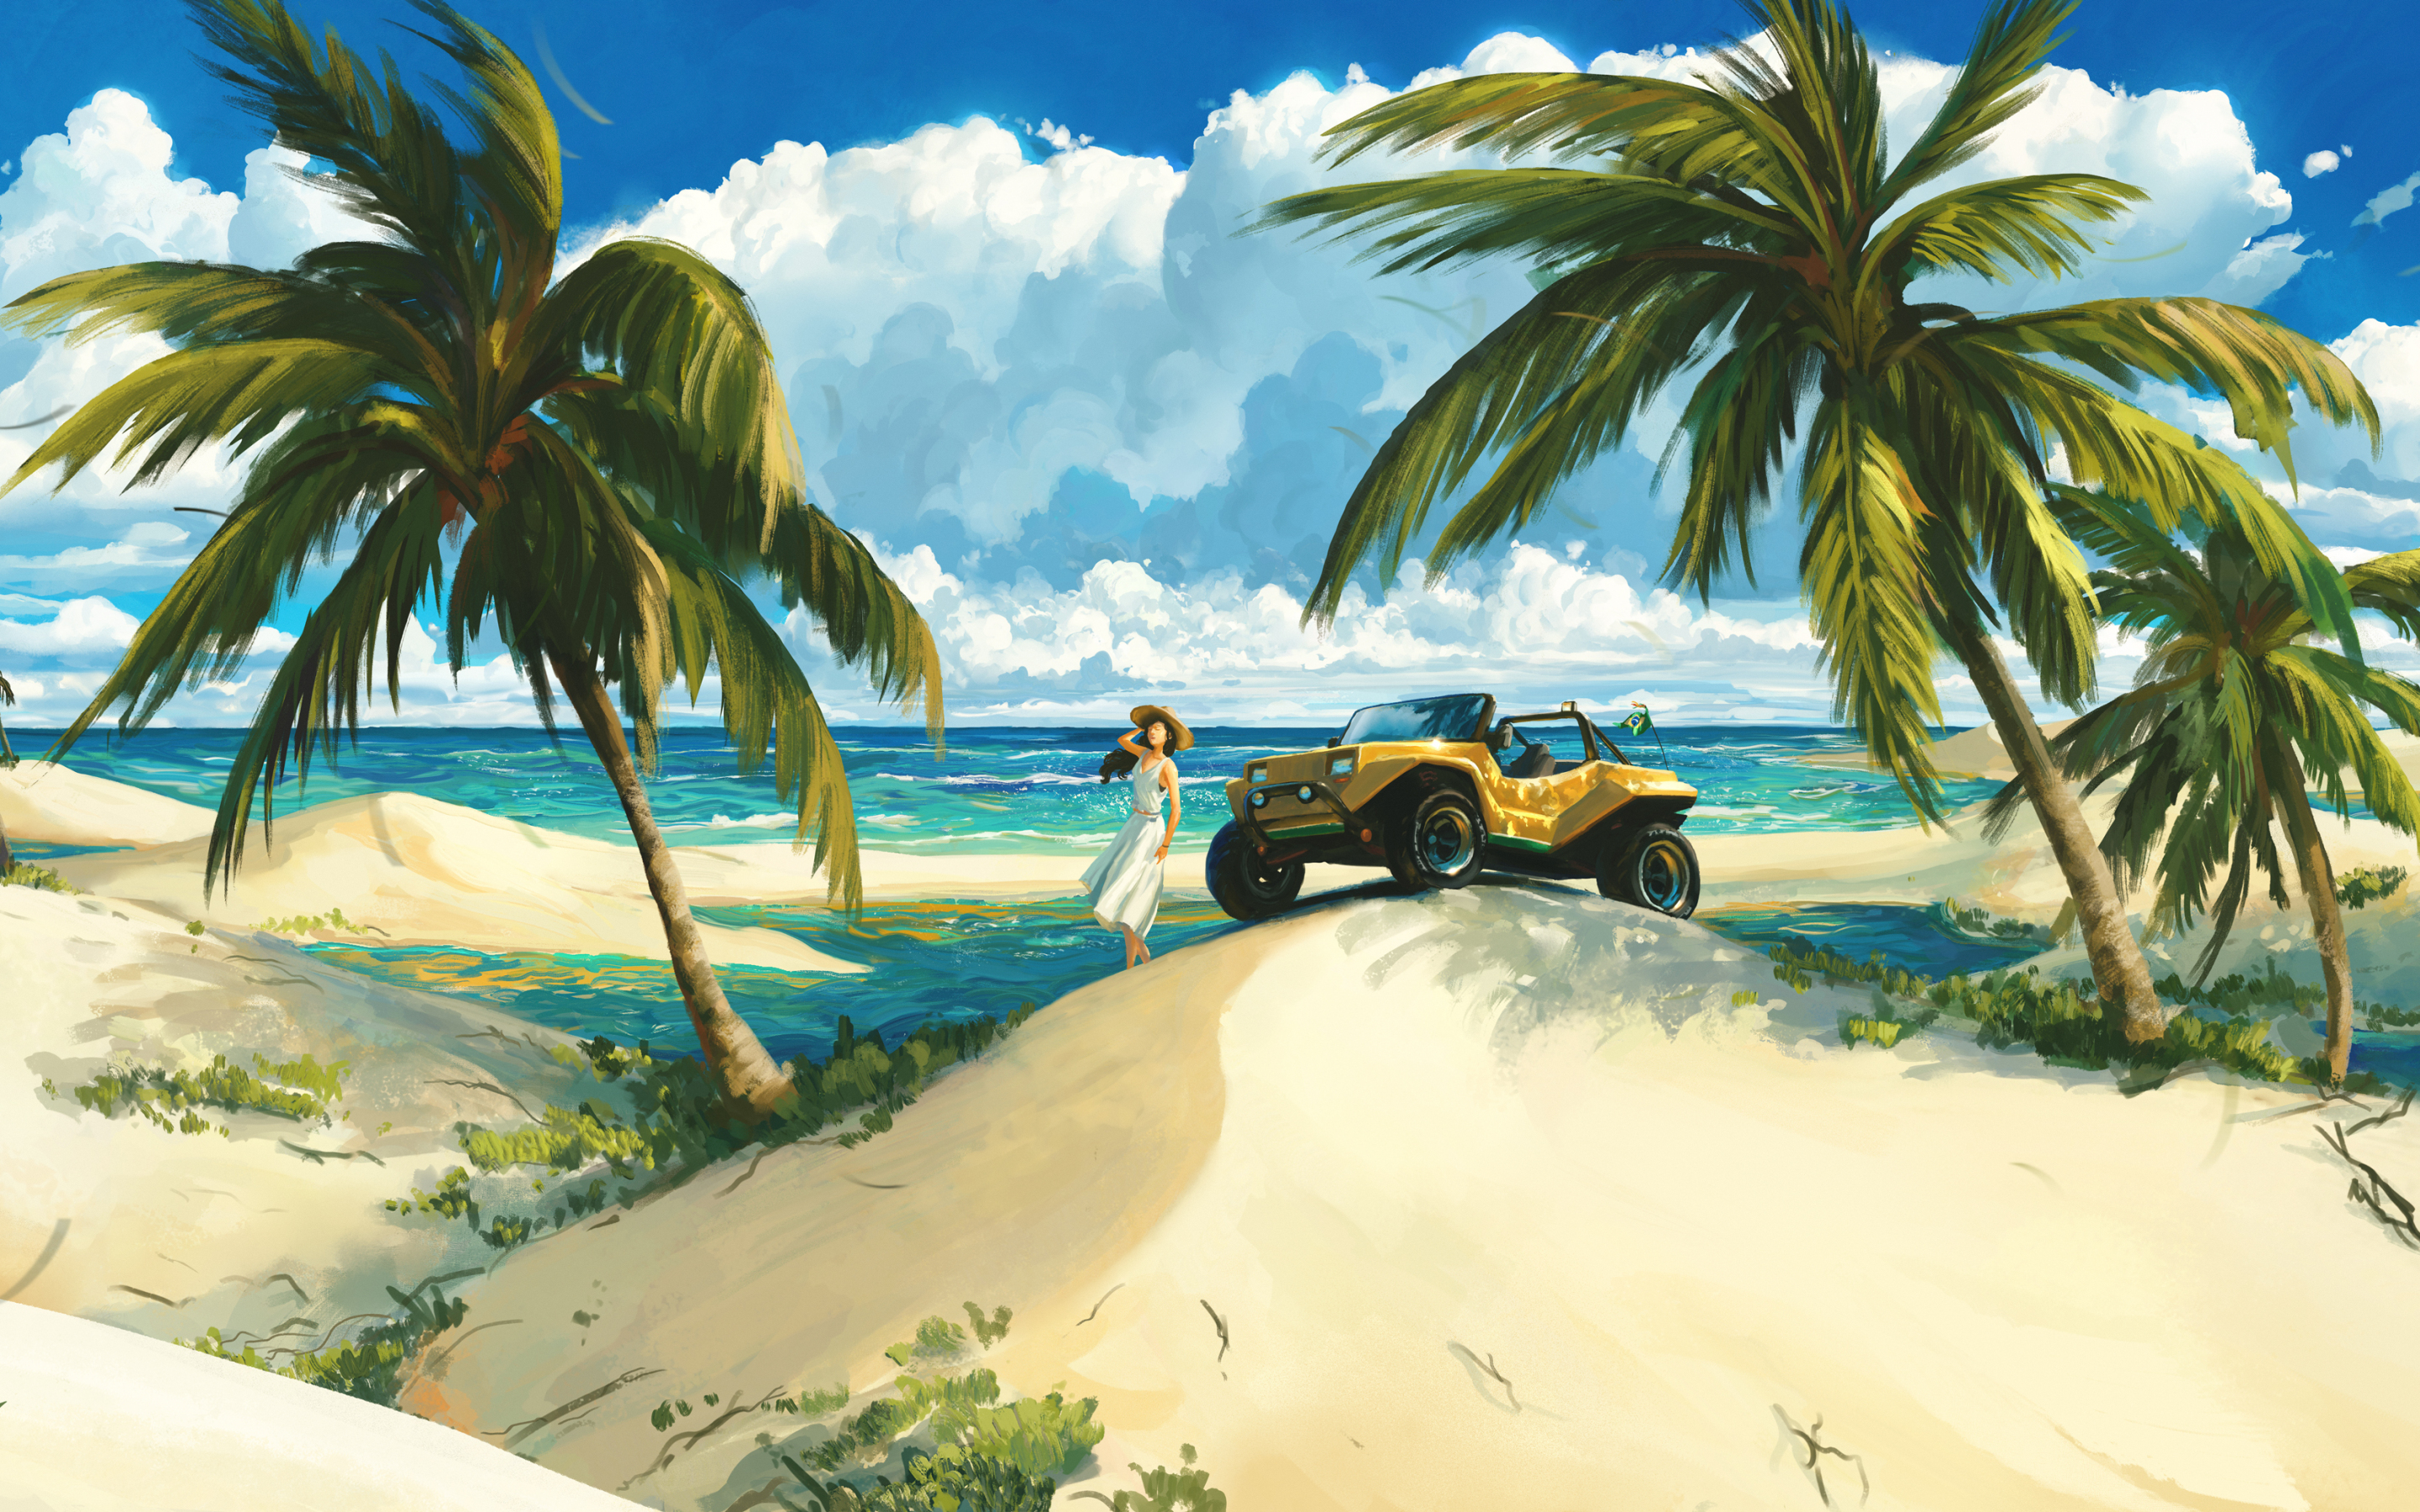 Girl at beach, palms in desert, artwork, 2880x1800 wallpaper